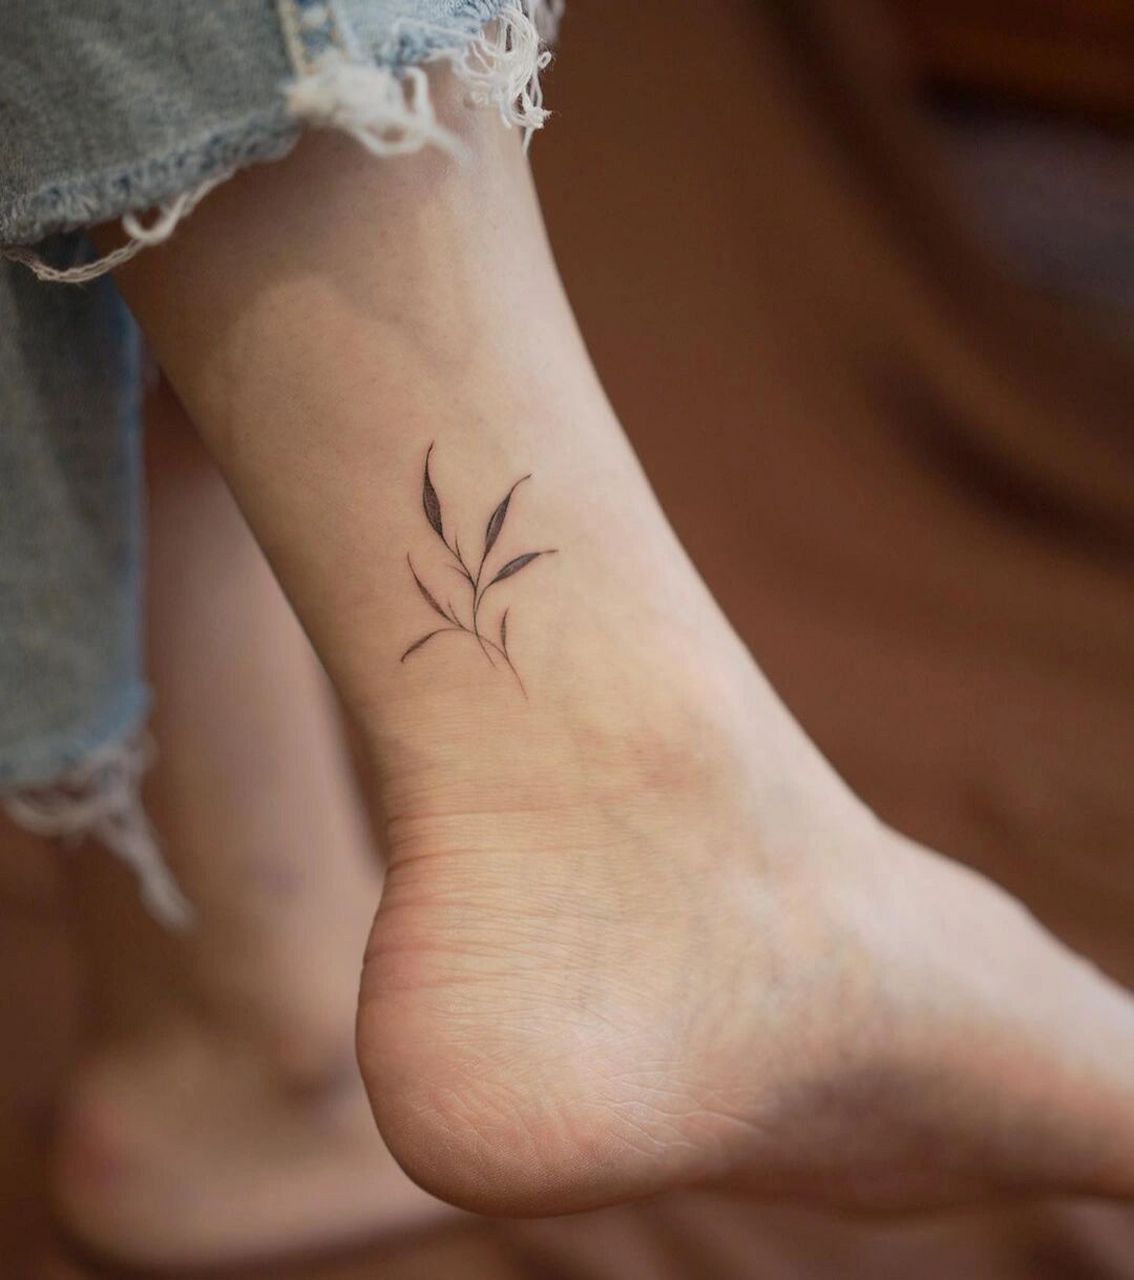 91脚踝纹身 叶子脚踝纹身,女生脚踝小纹身图案